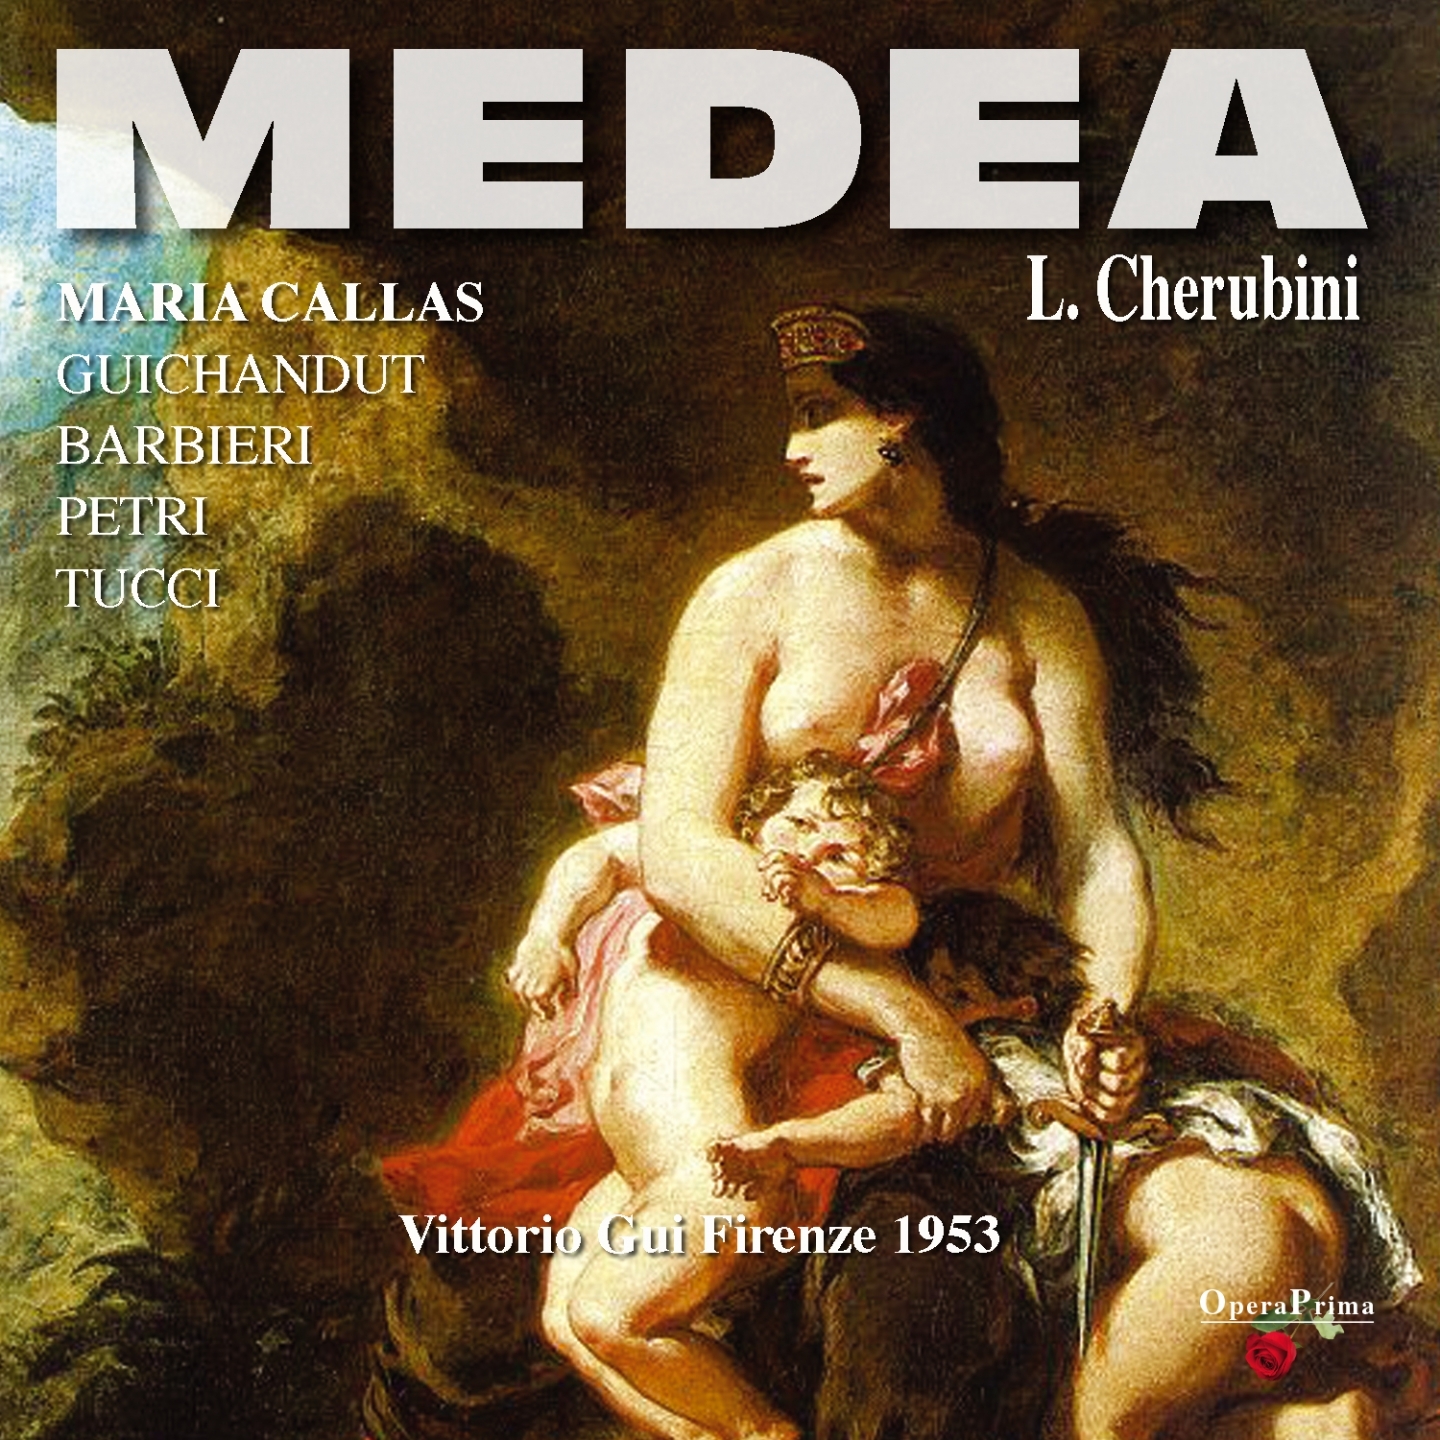 Medea : Act II  " Date almen per pieta"